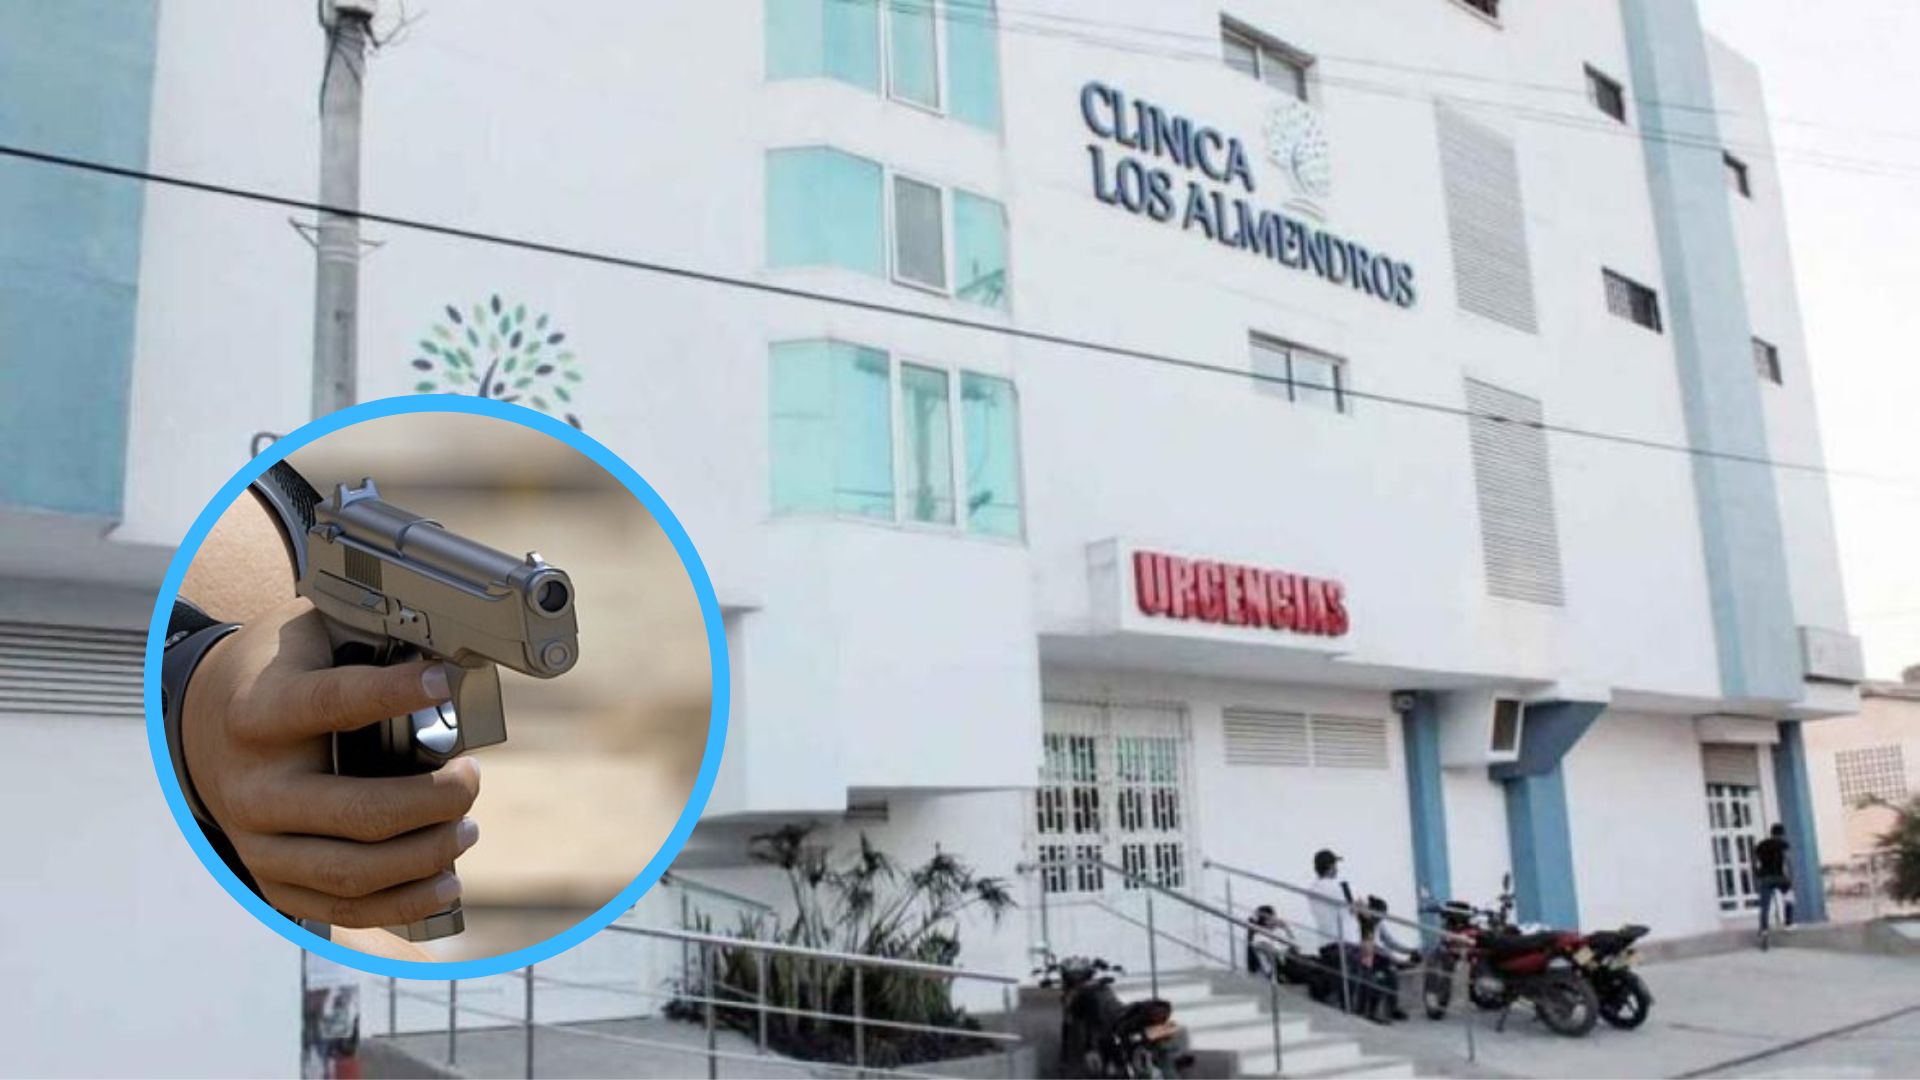 Clínica Los Almendros, donde permanece el herido / Imagen de referencia arma.